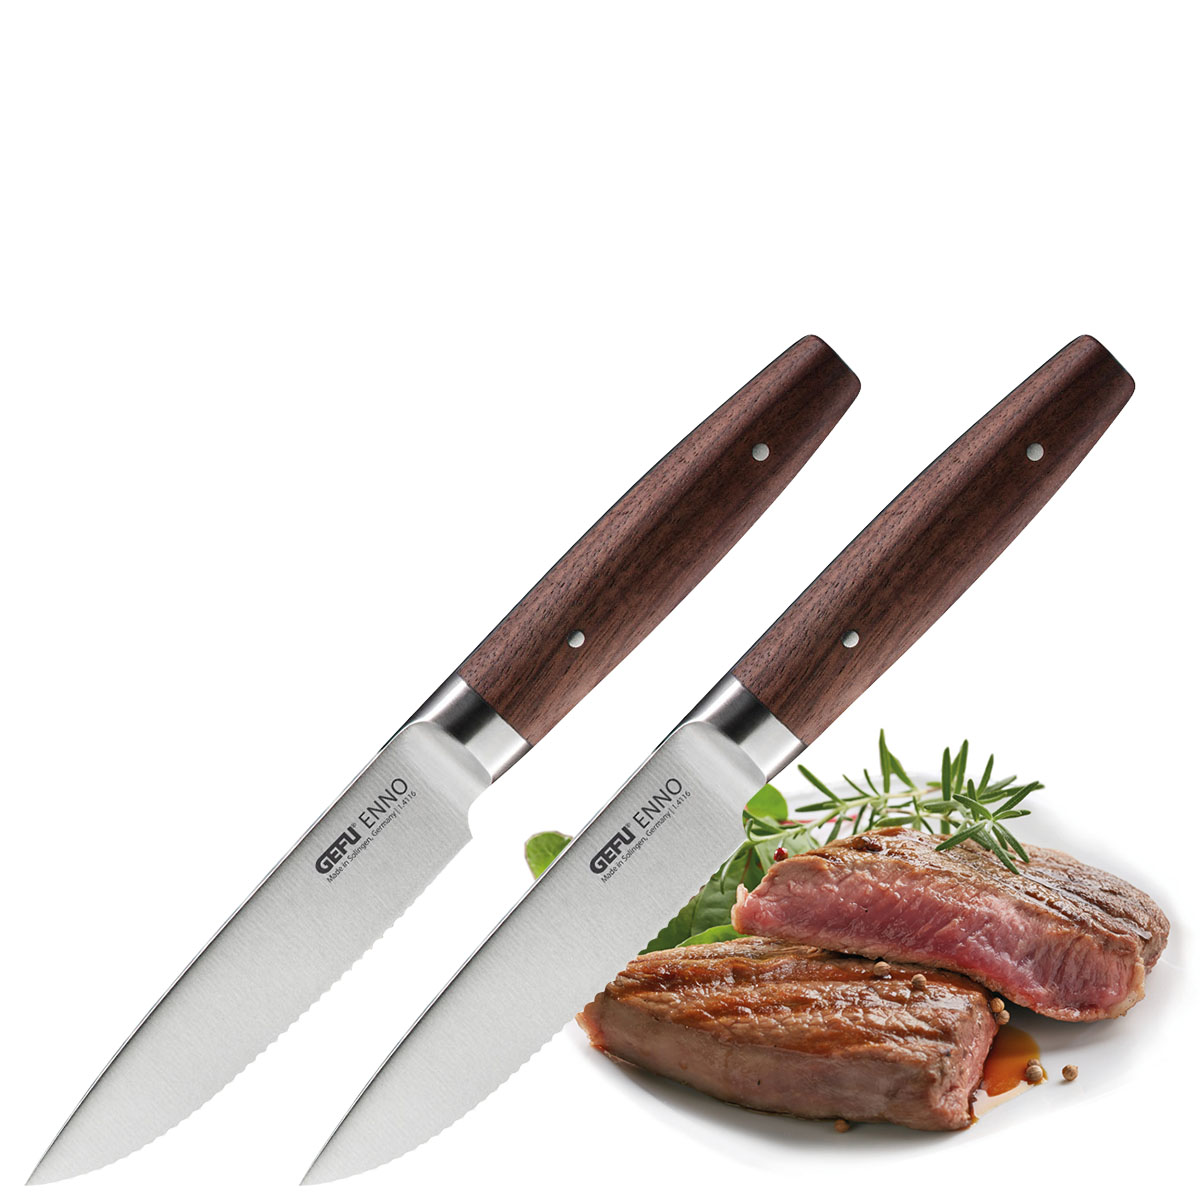 Steakmesser-Set ENNO, 2 Stück